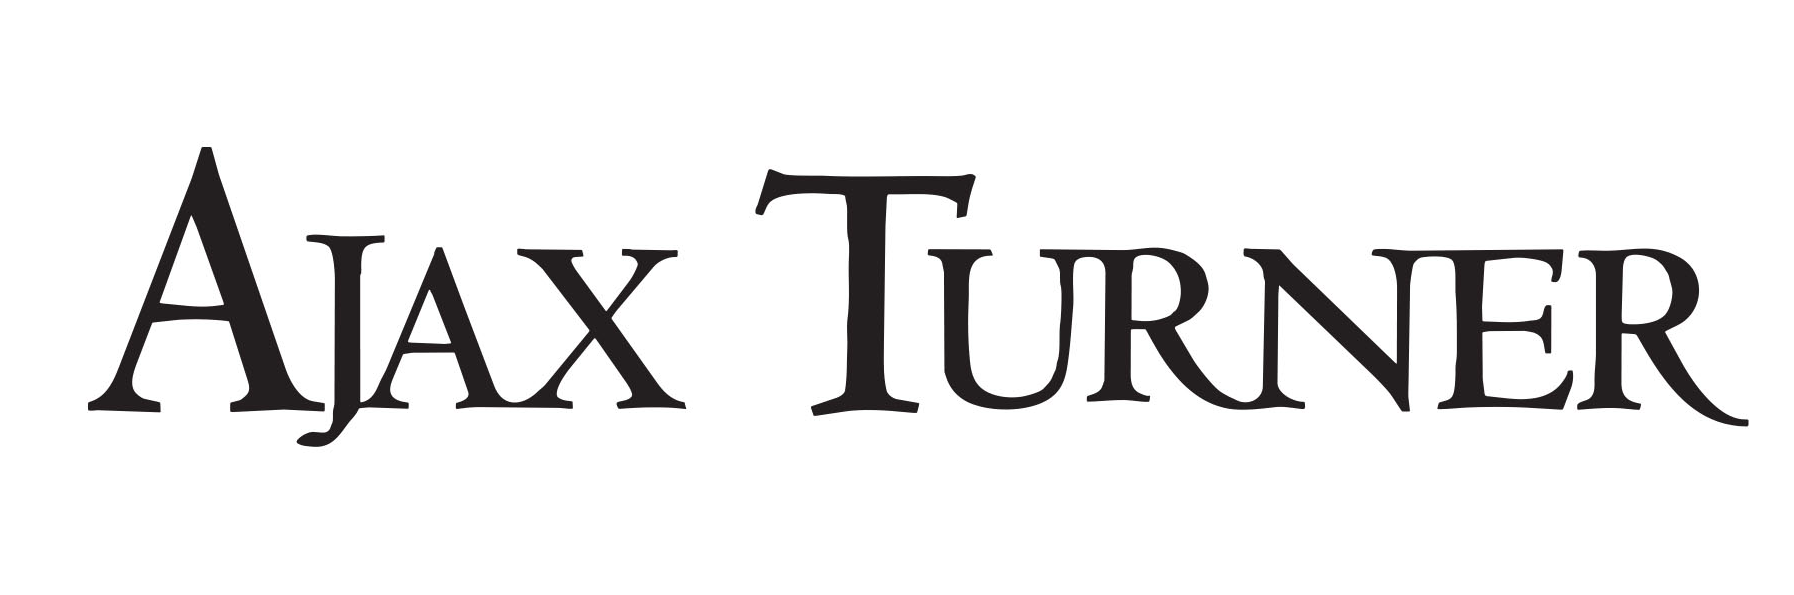 Ajax Turner Co.